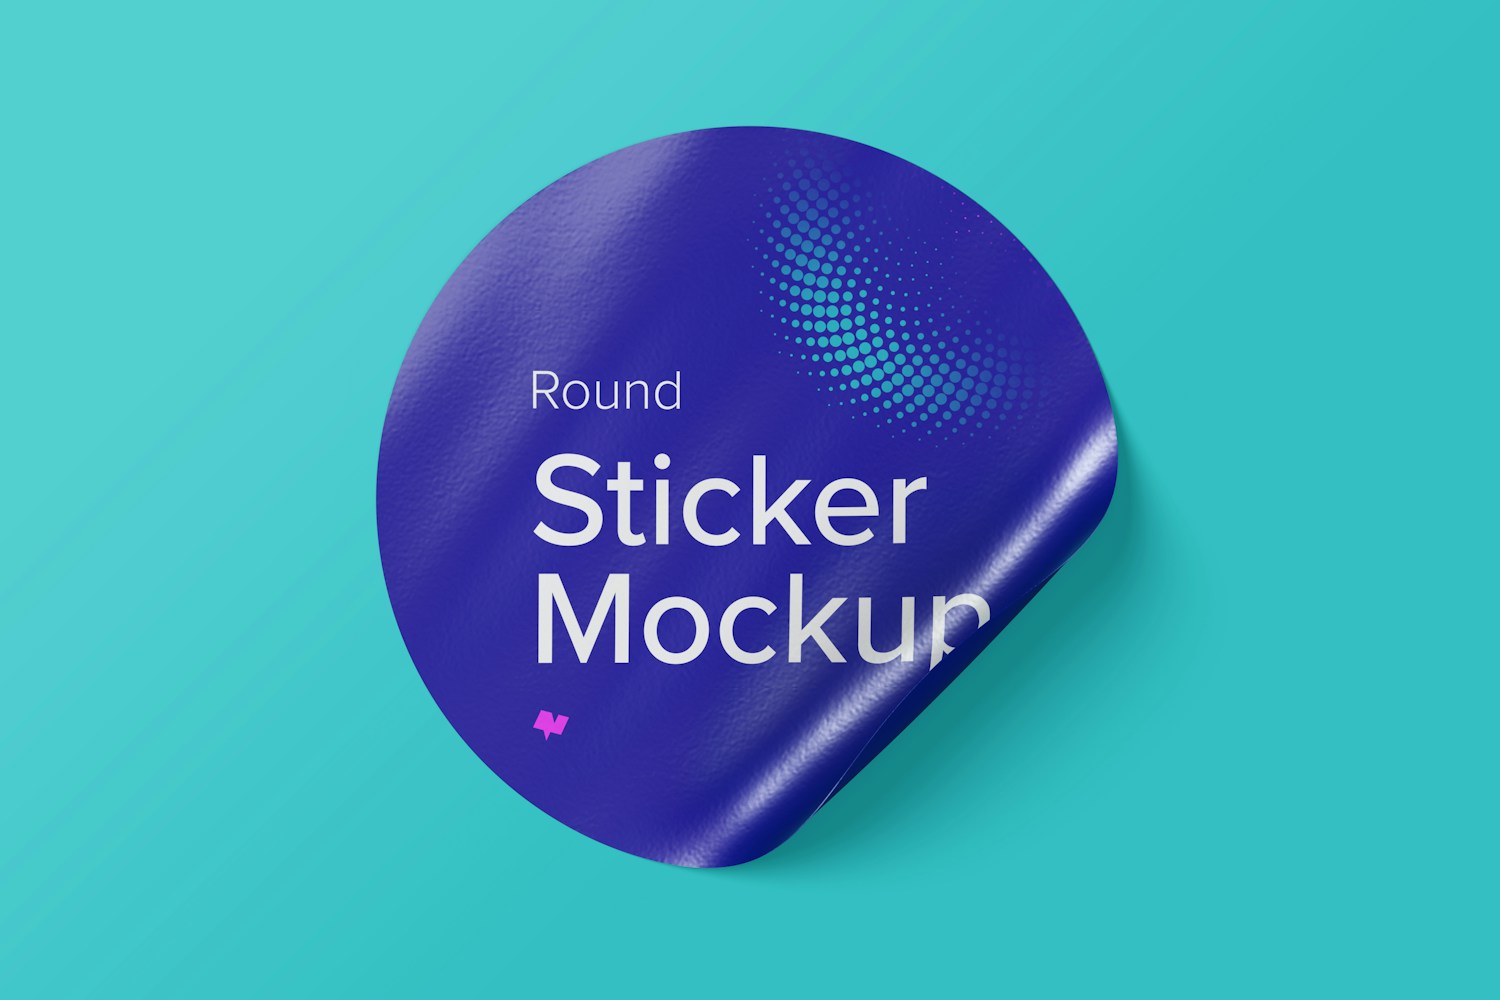 Round Sticker Mockup, Front View